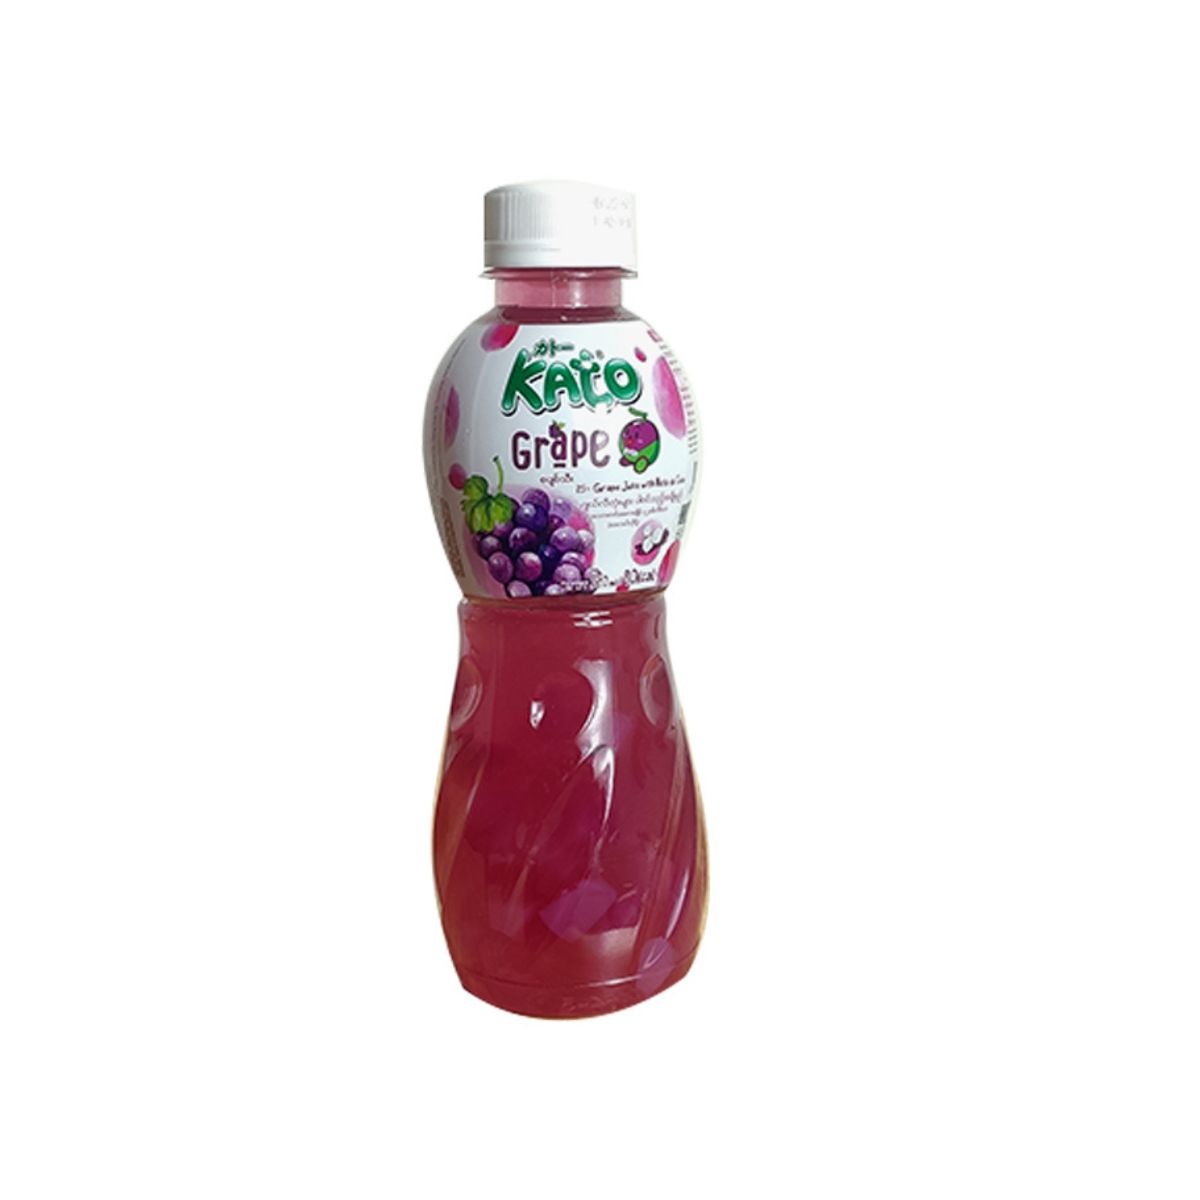 Kato Grape Juice with Nata de Coco - 320 ml